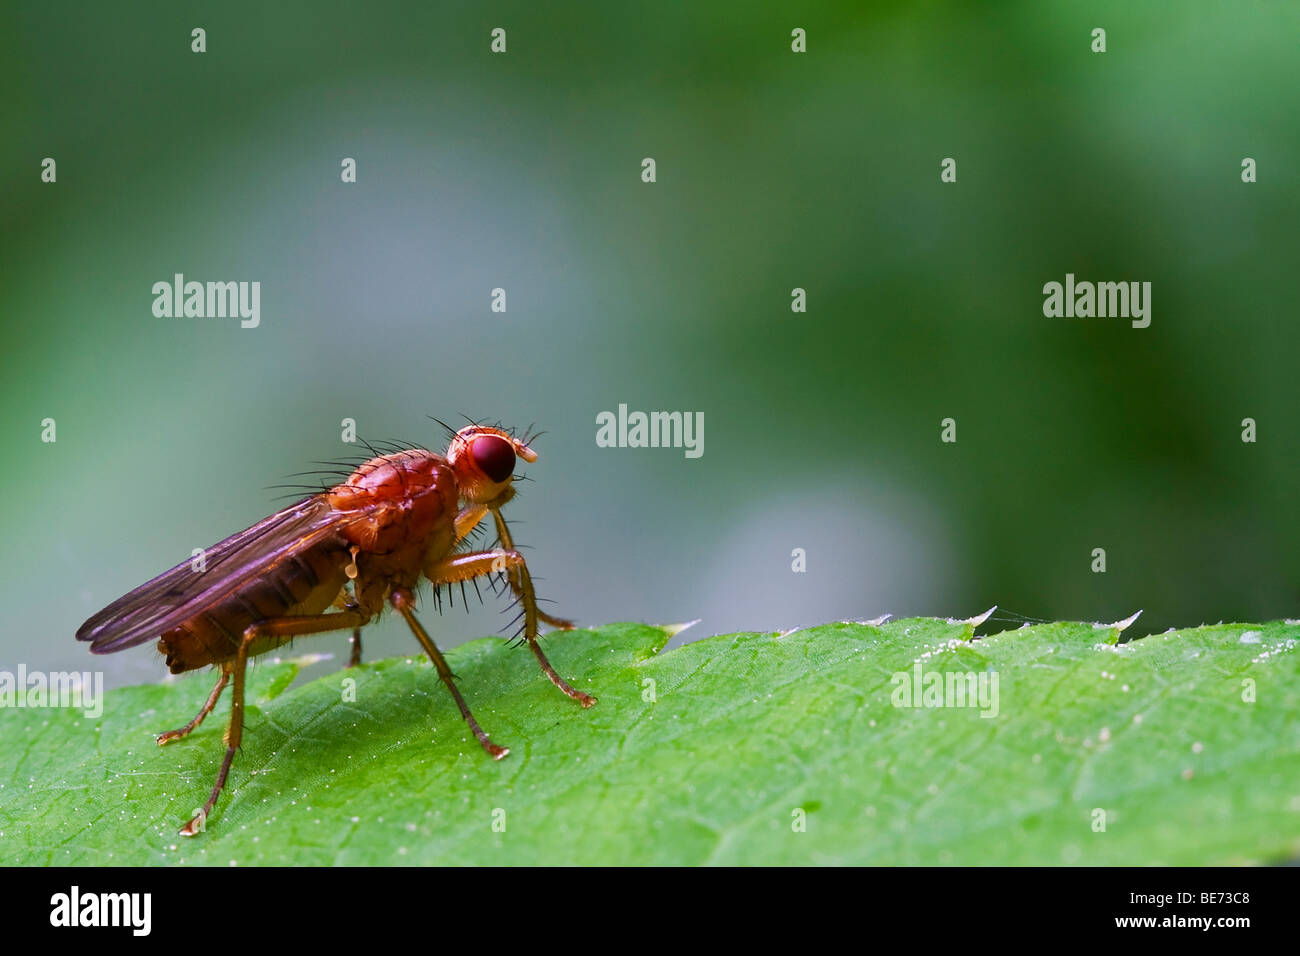 Fly (Diptera) Stock Photo